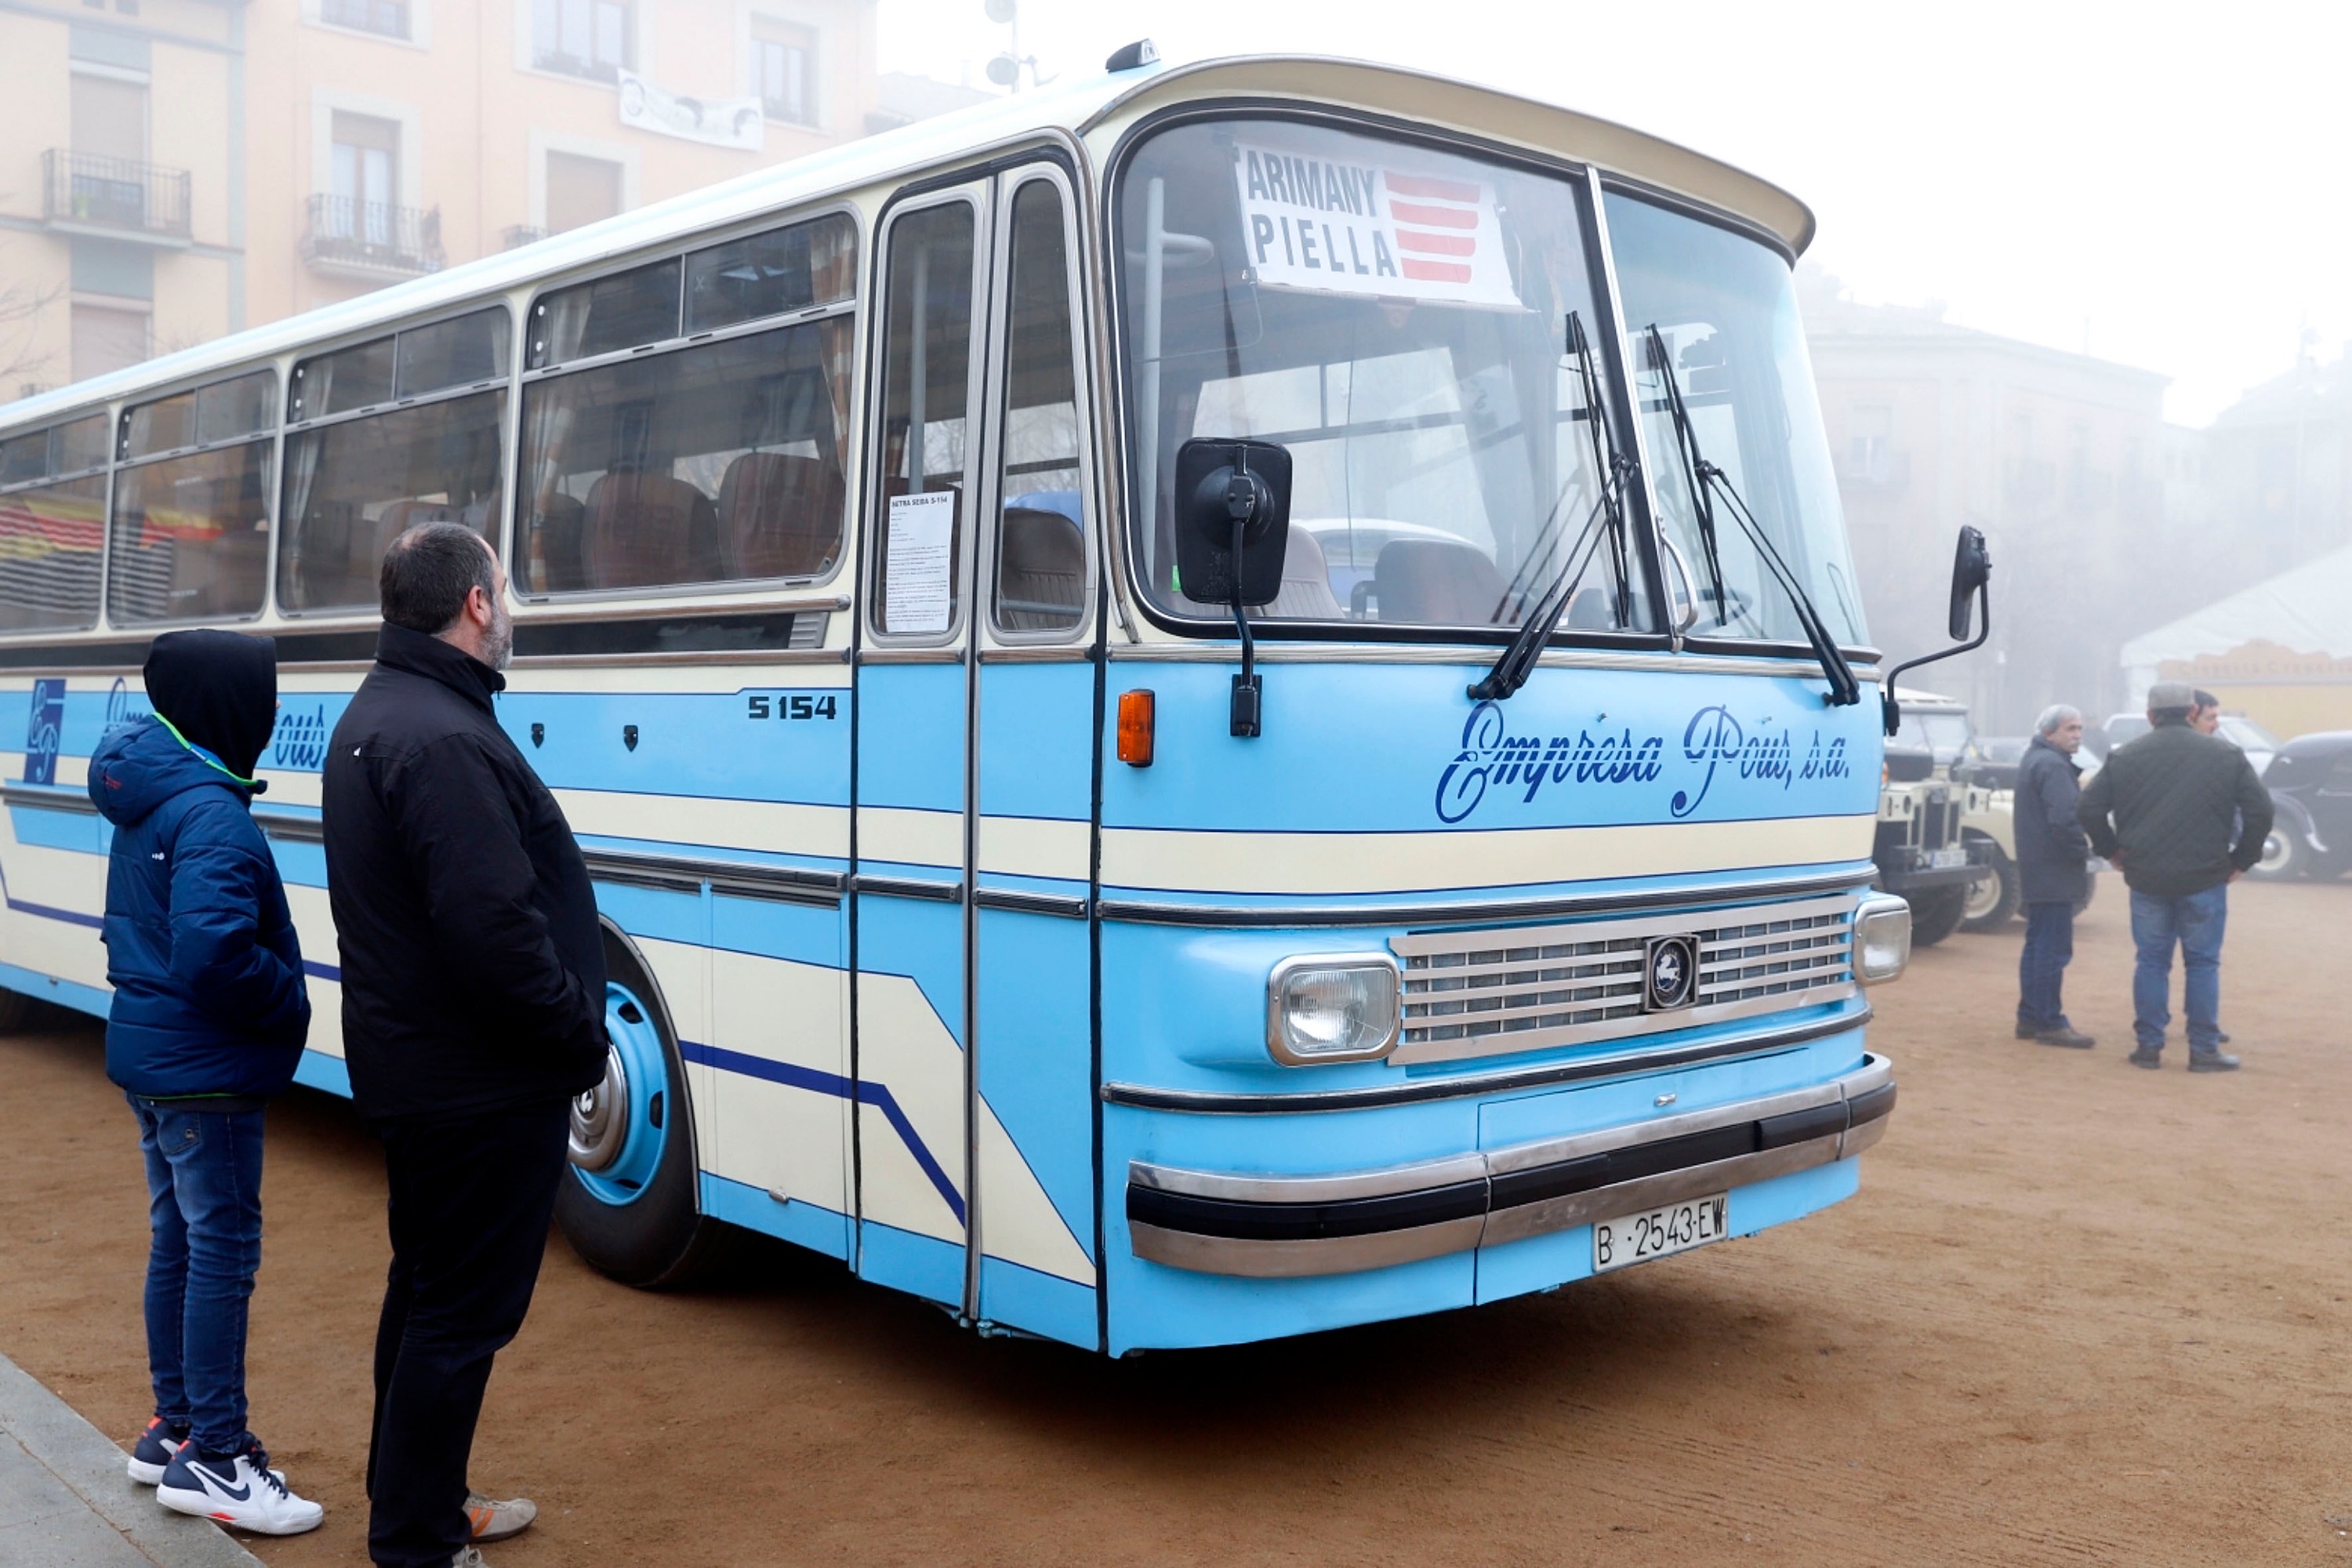 Aquest és l'autobús restaurat per Toni Arimany aparcat a la plaça Fra Bernadí